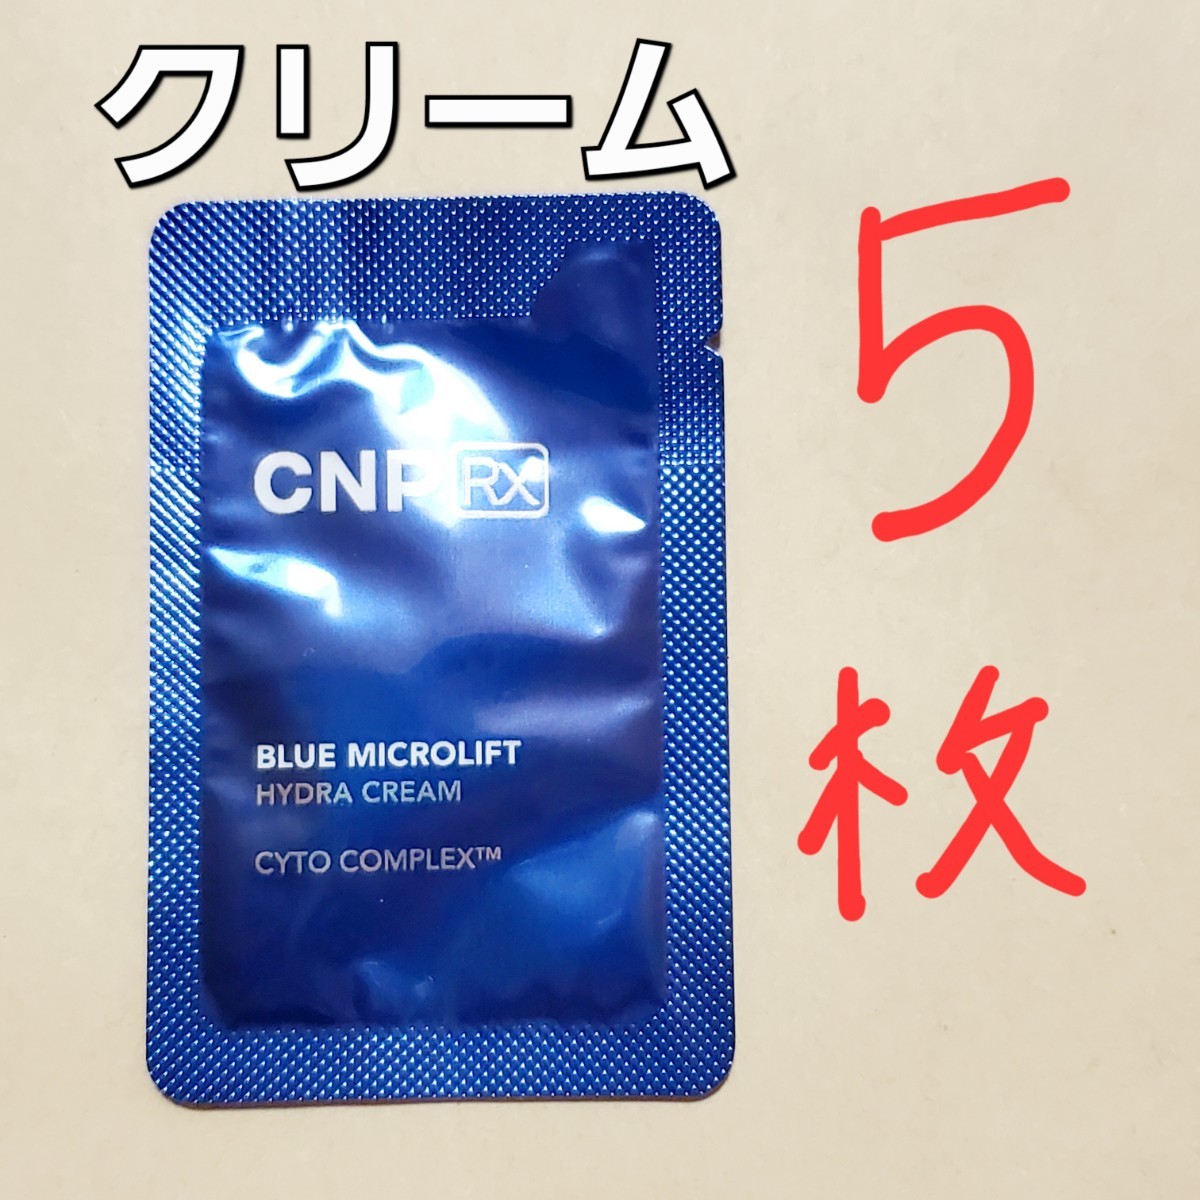 CNP Rx ブルー マイクロリフト ハイドラ クリーム 1ml 5枚 (5ml)